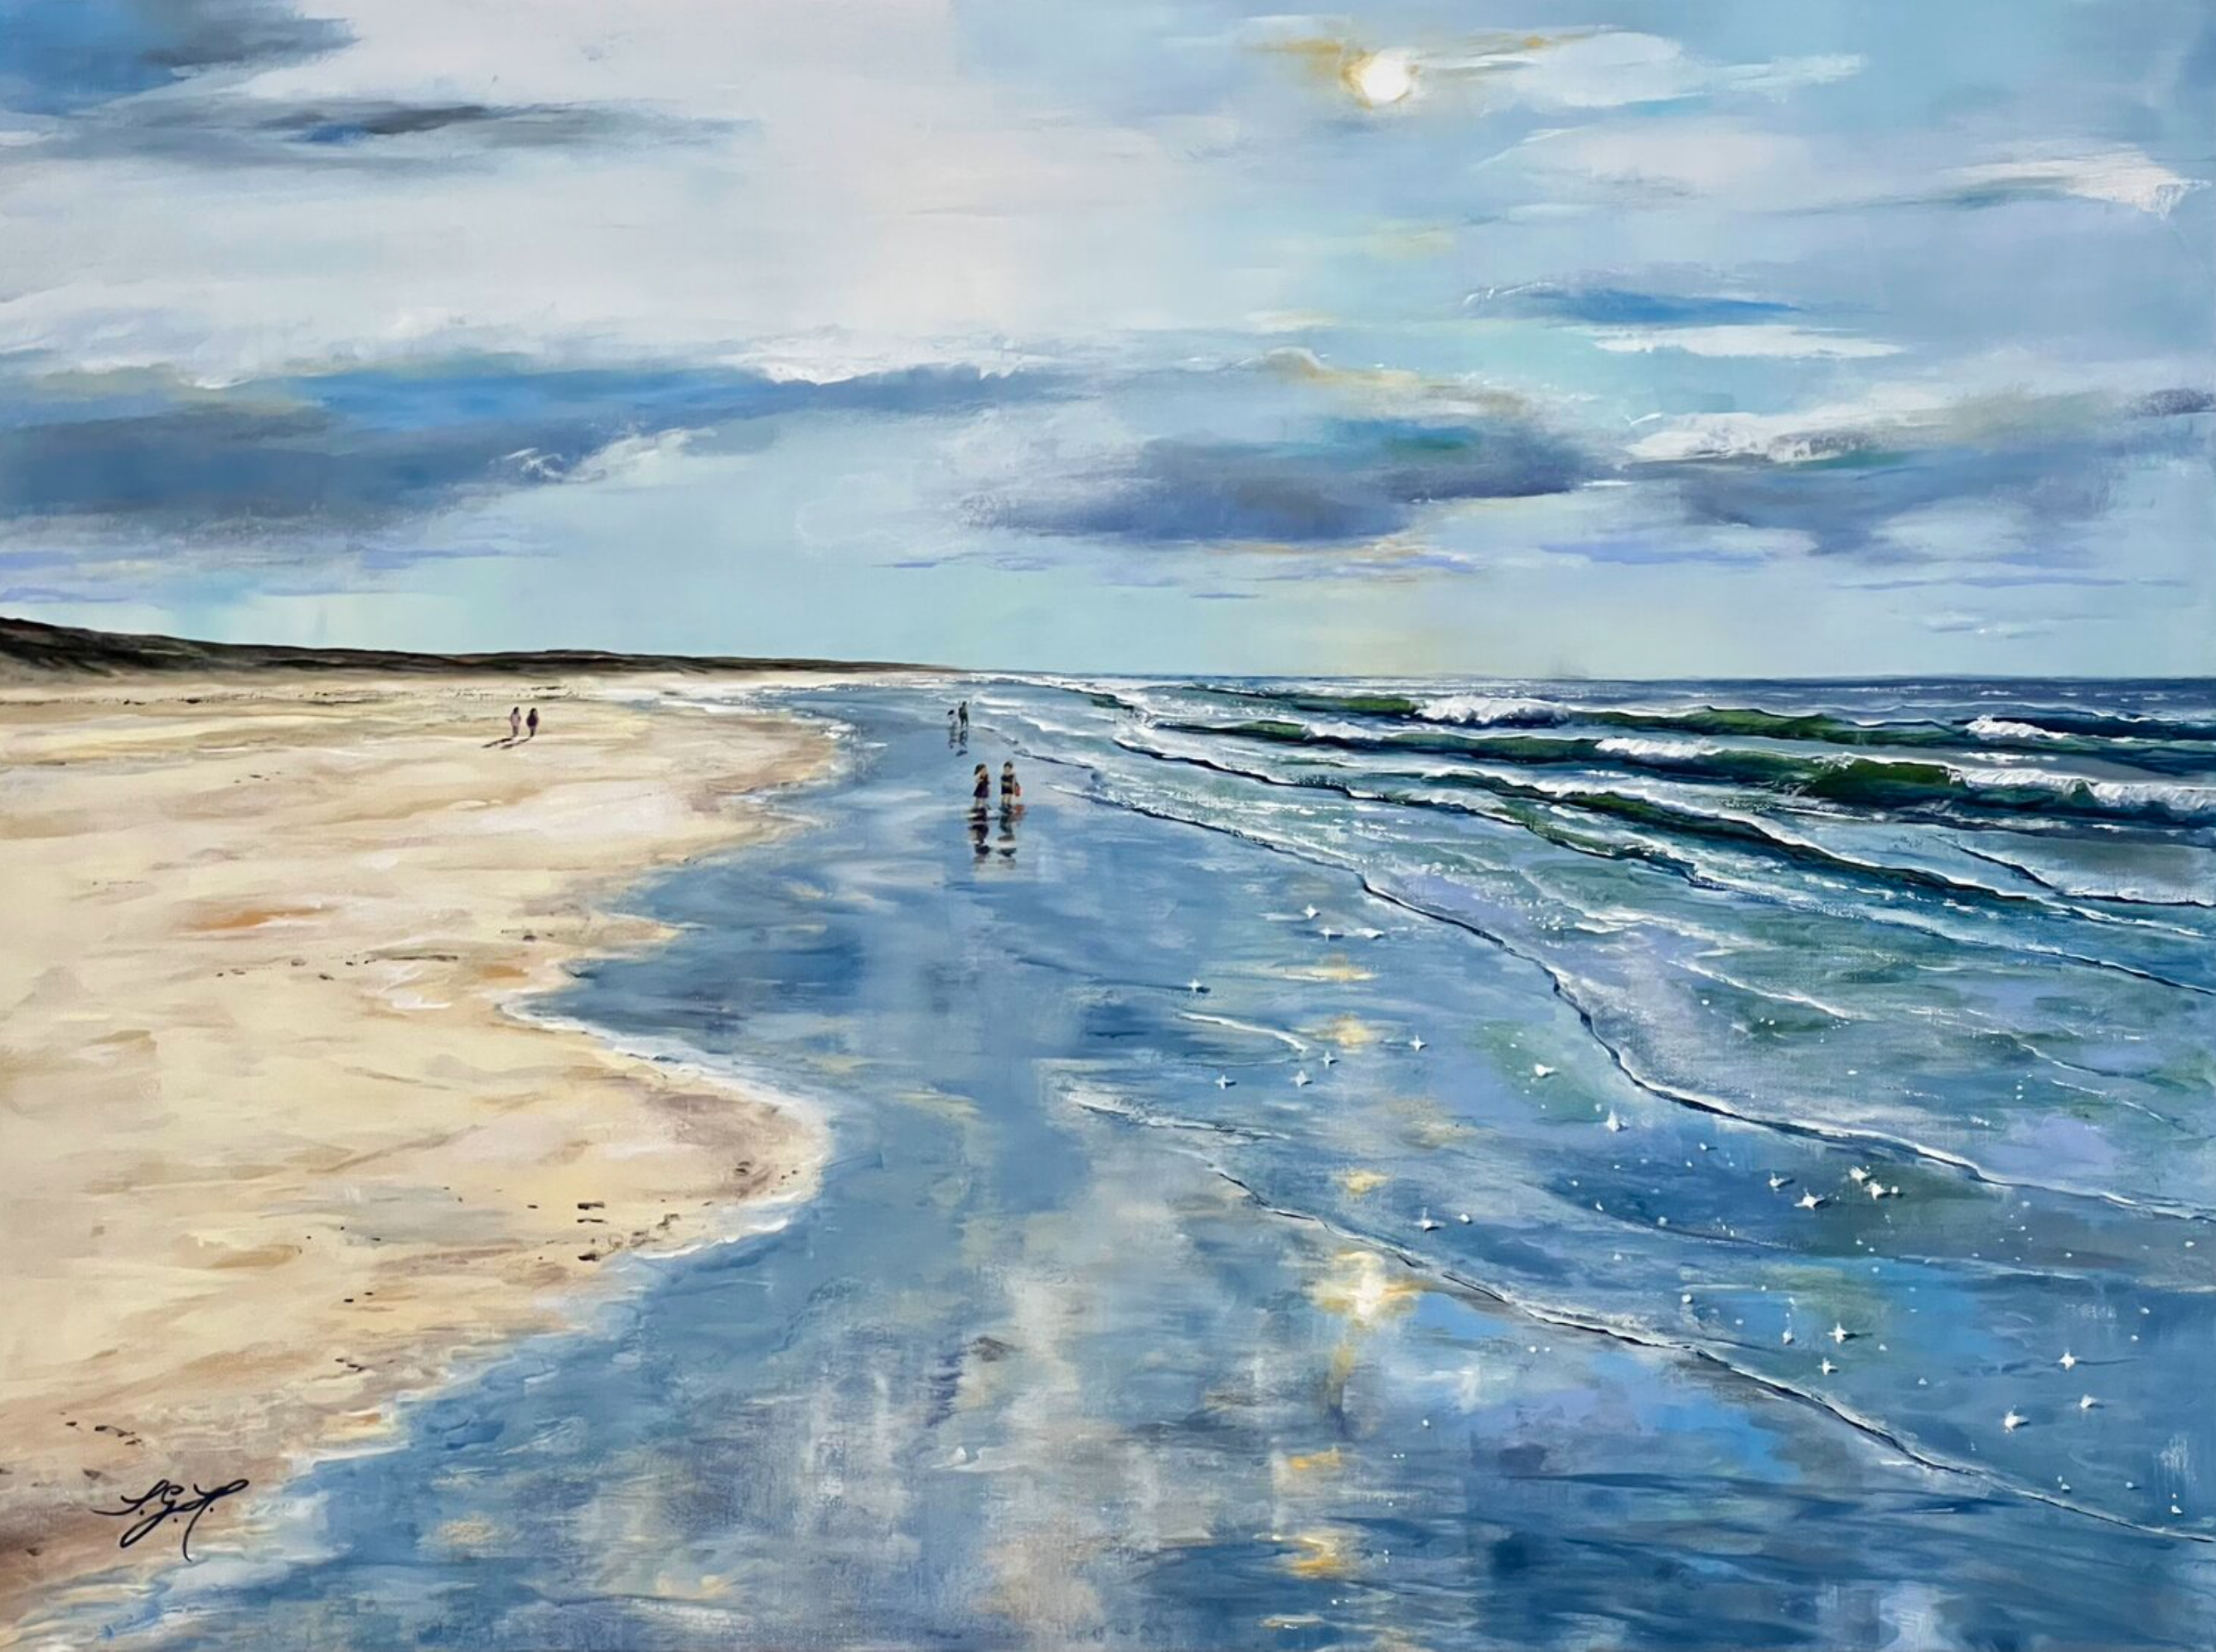 Il dipinto "Summertime 2" di Sandra Gebhardt-Hoepfner mostra l'estate in riva al mare. Il tempo si ferma e l'estate sembra infinita. Una passeggiata sotto il sole, con il mare al fianco. Felicità. Tutto è possibile. I colori principali sono l'azzurro, il bianco, il grigio chiaro, il turchese, il grigio scuro, il rosa, l'arancione, il beige chiaro e il marrone sabbia.